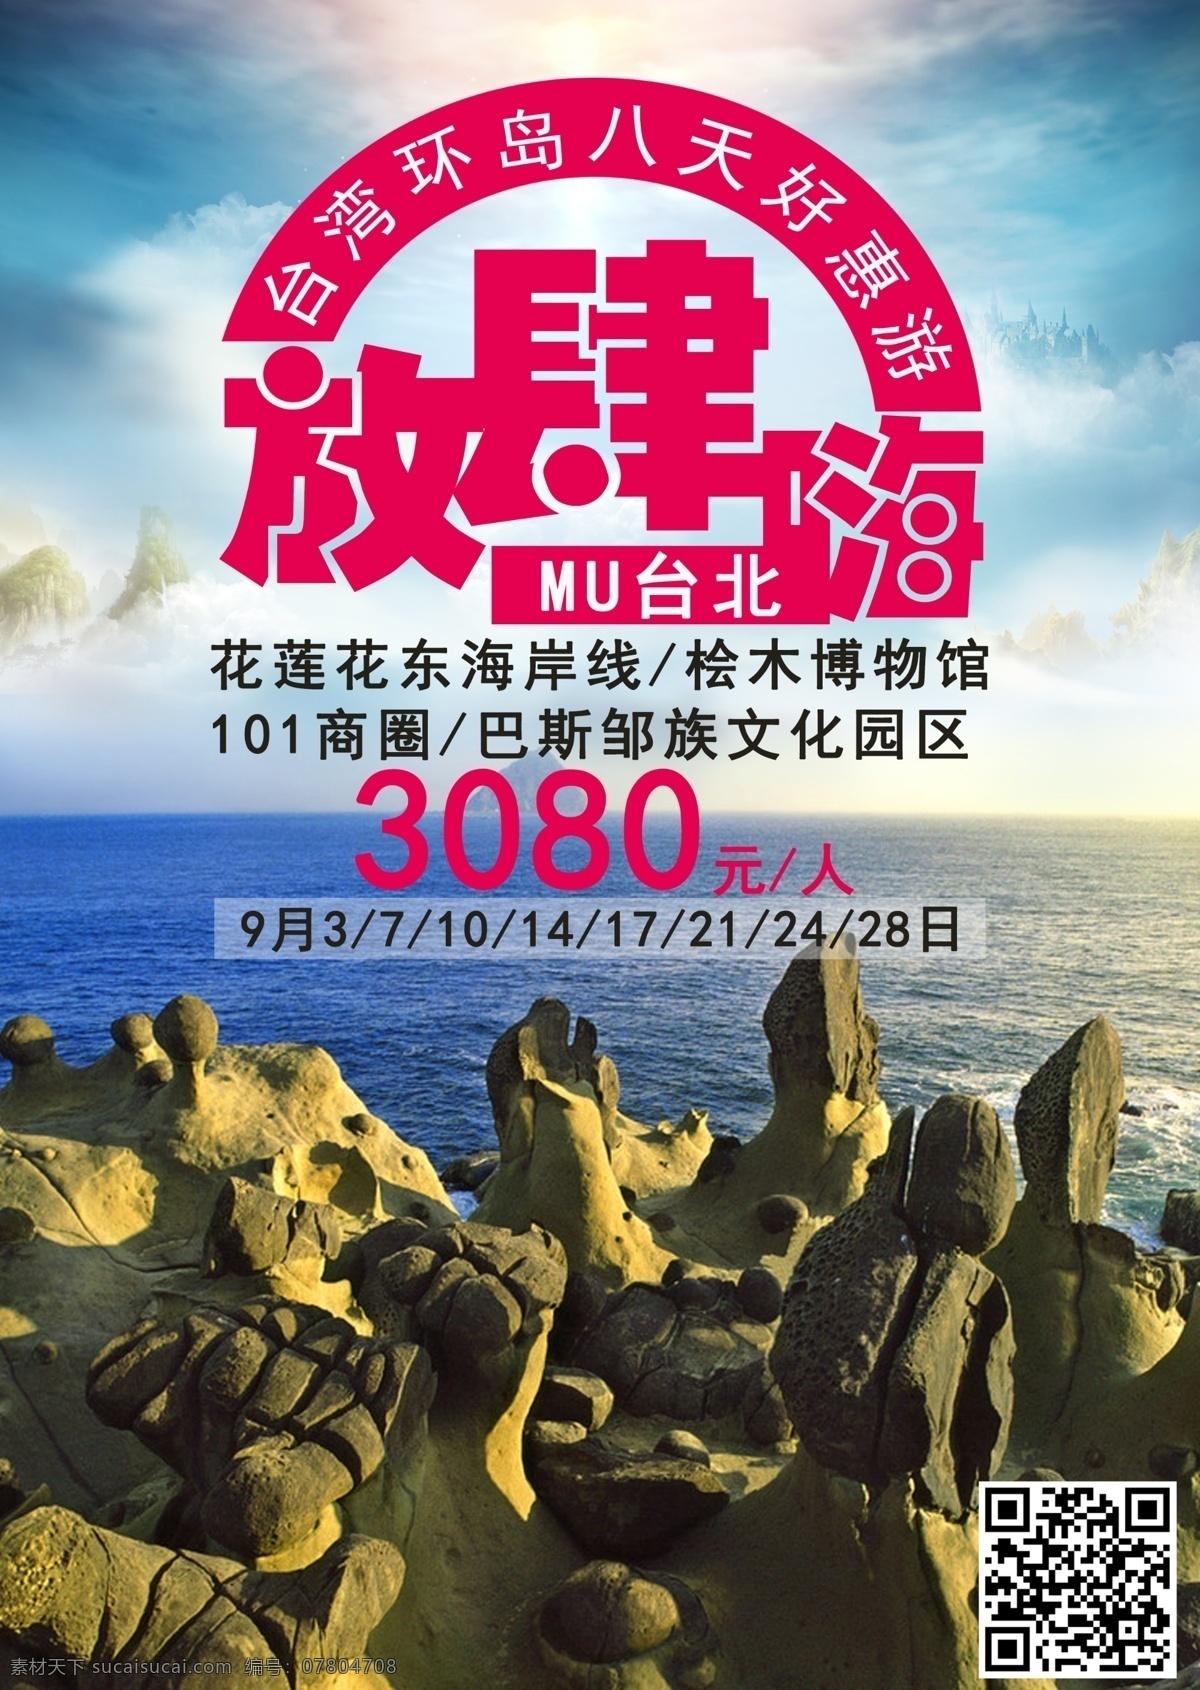 台湾好惠游 台湾 旅游海报 台北 野质公园 好惠游